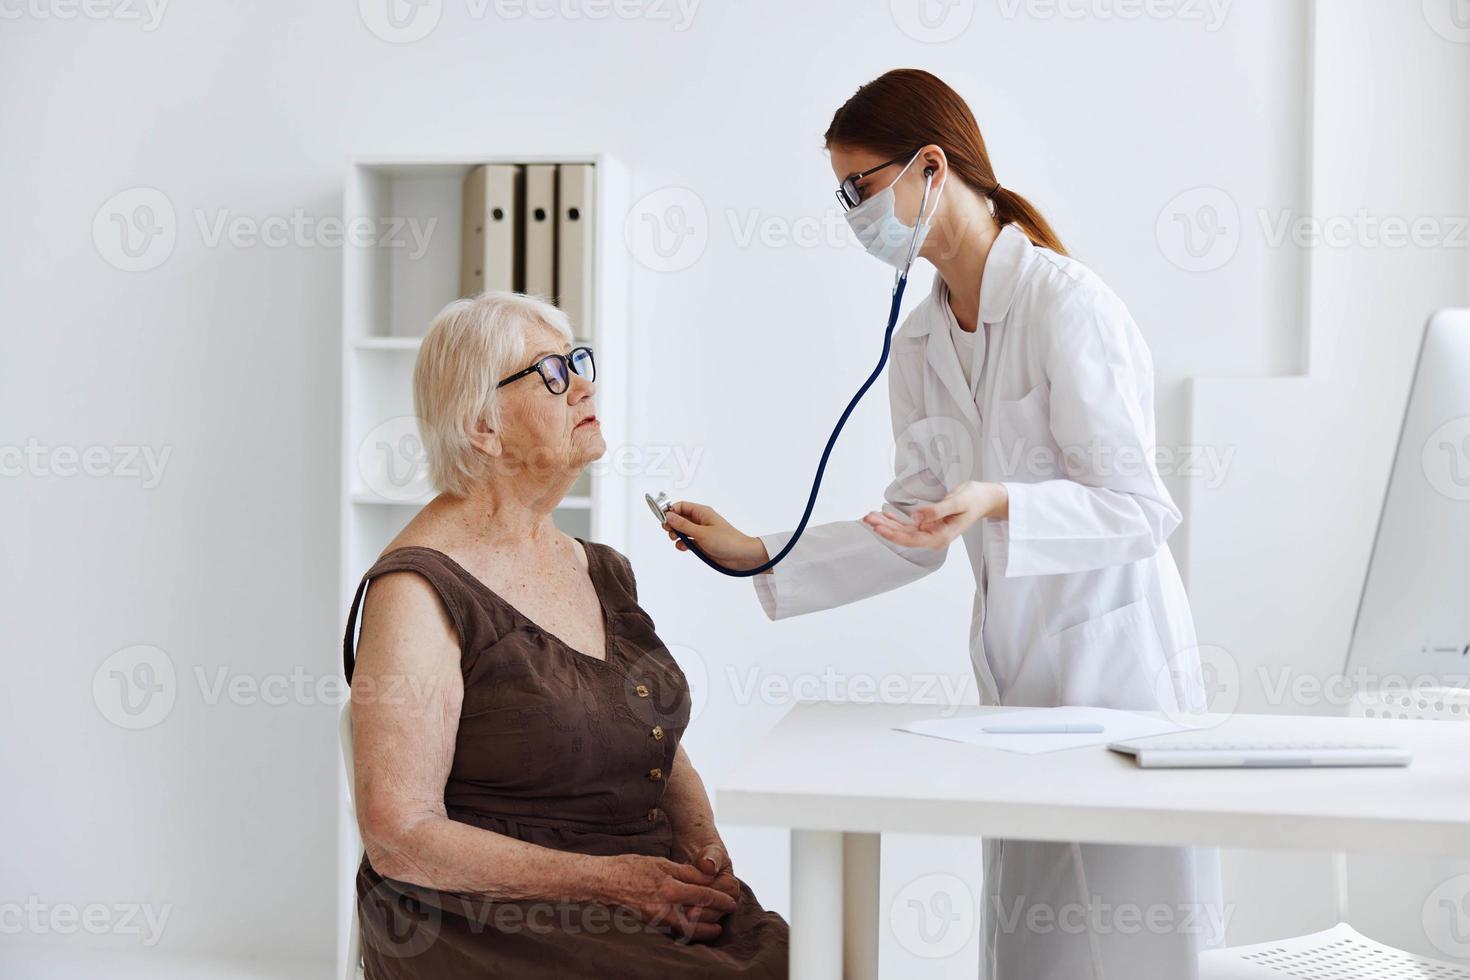 nurse in white coat stethoscope examination professional advice photo